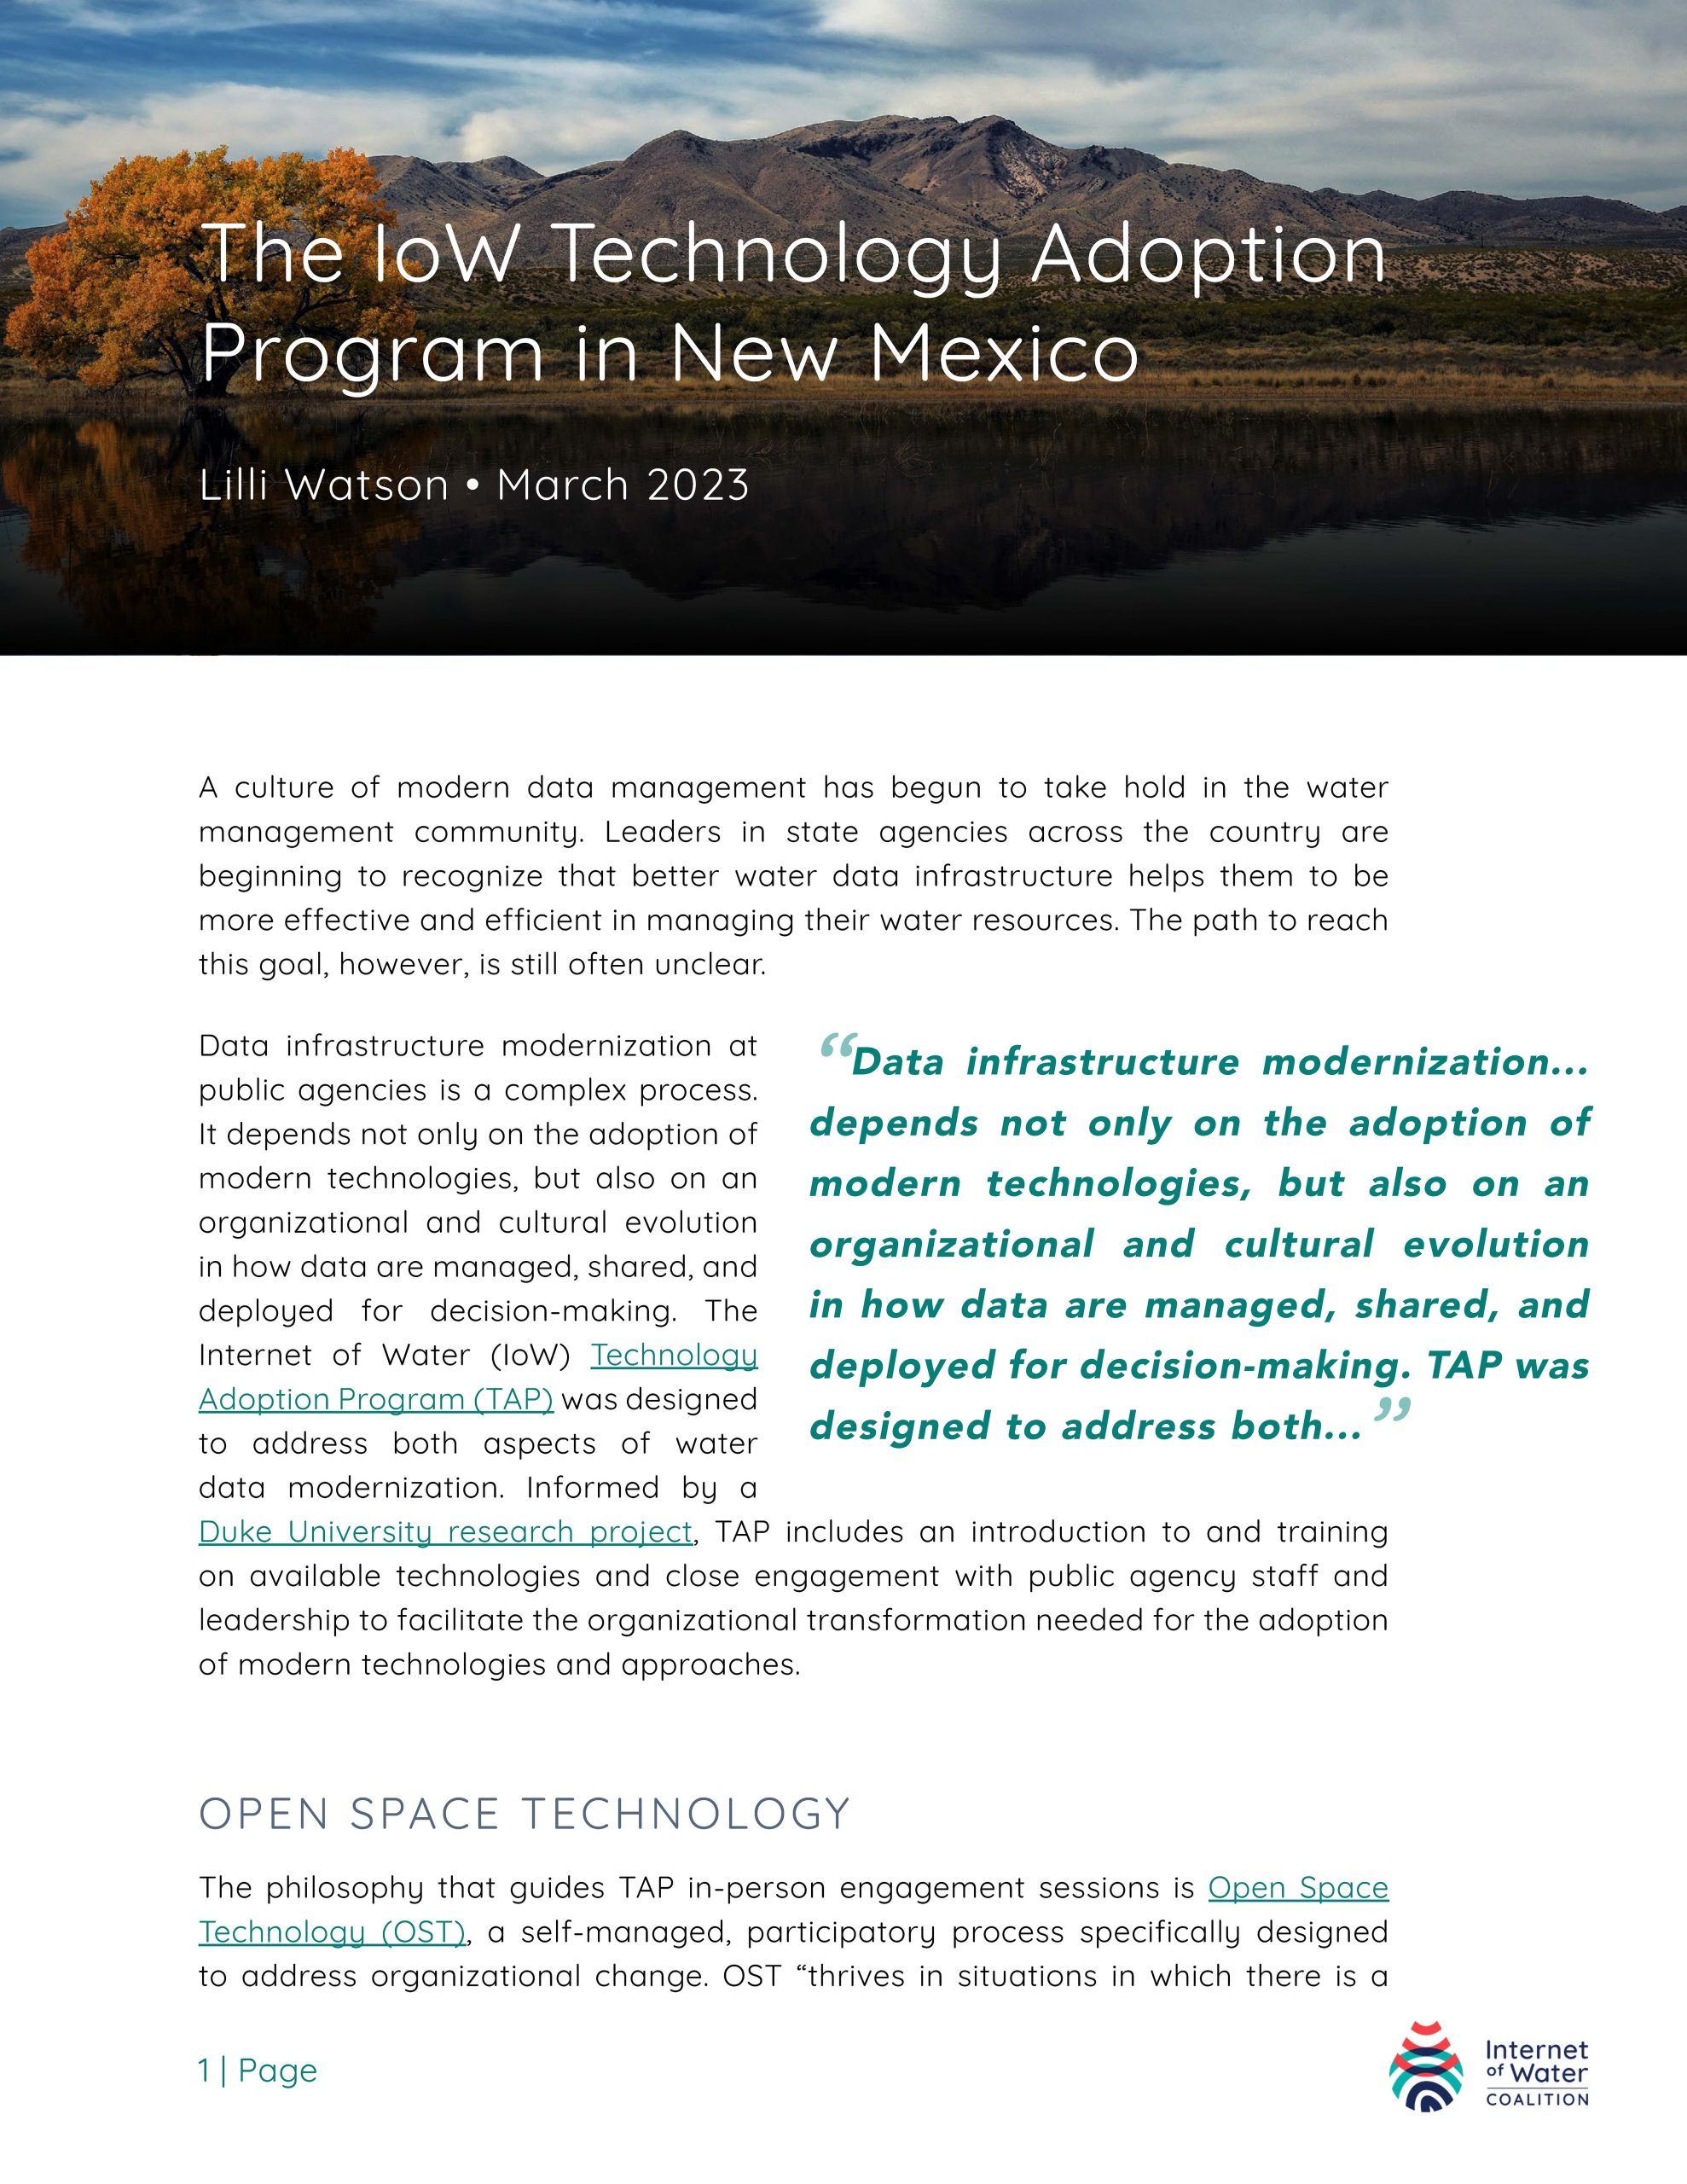 IoW Technology Adoption Program, New Mexico